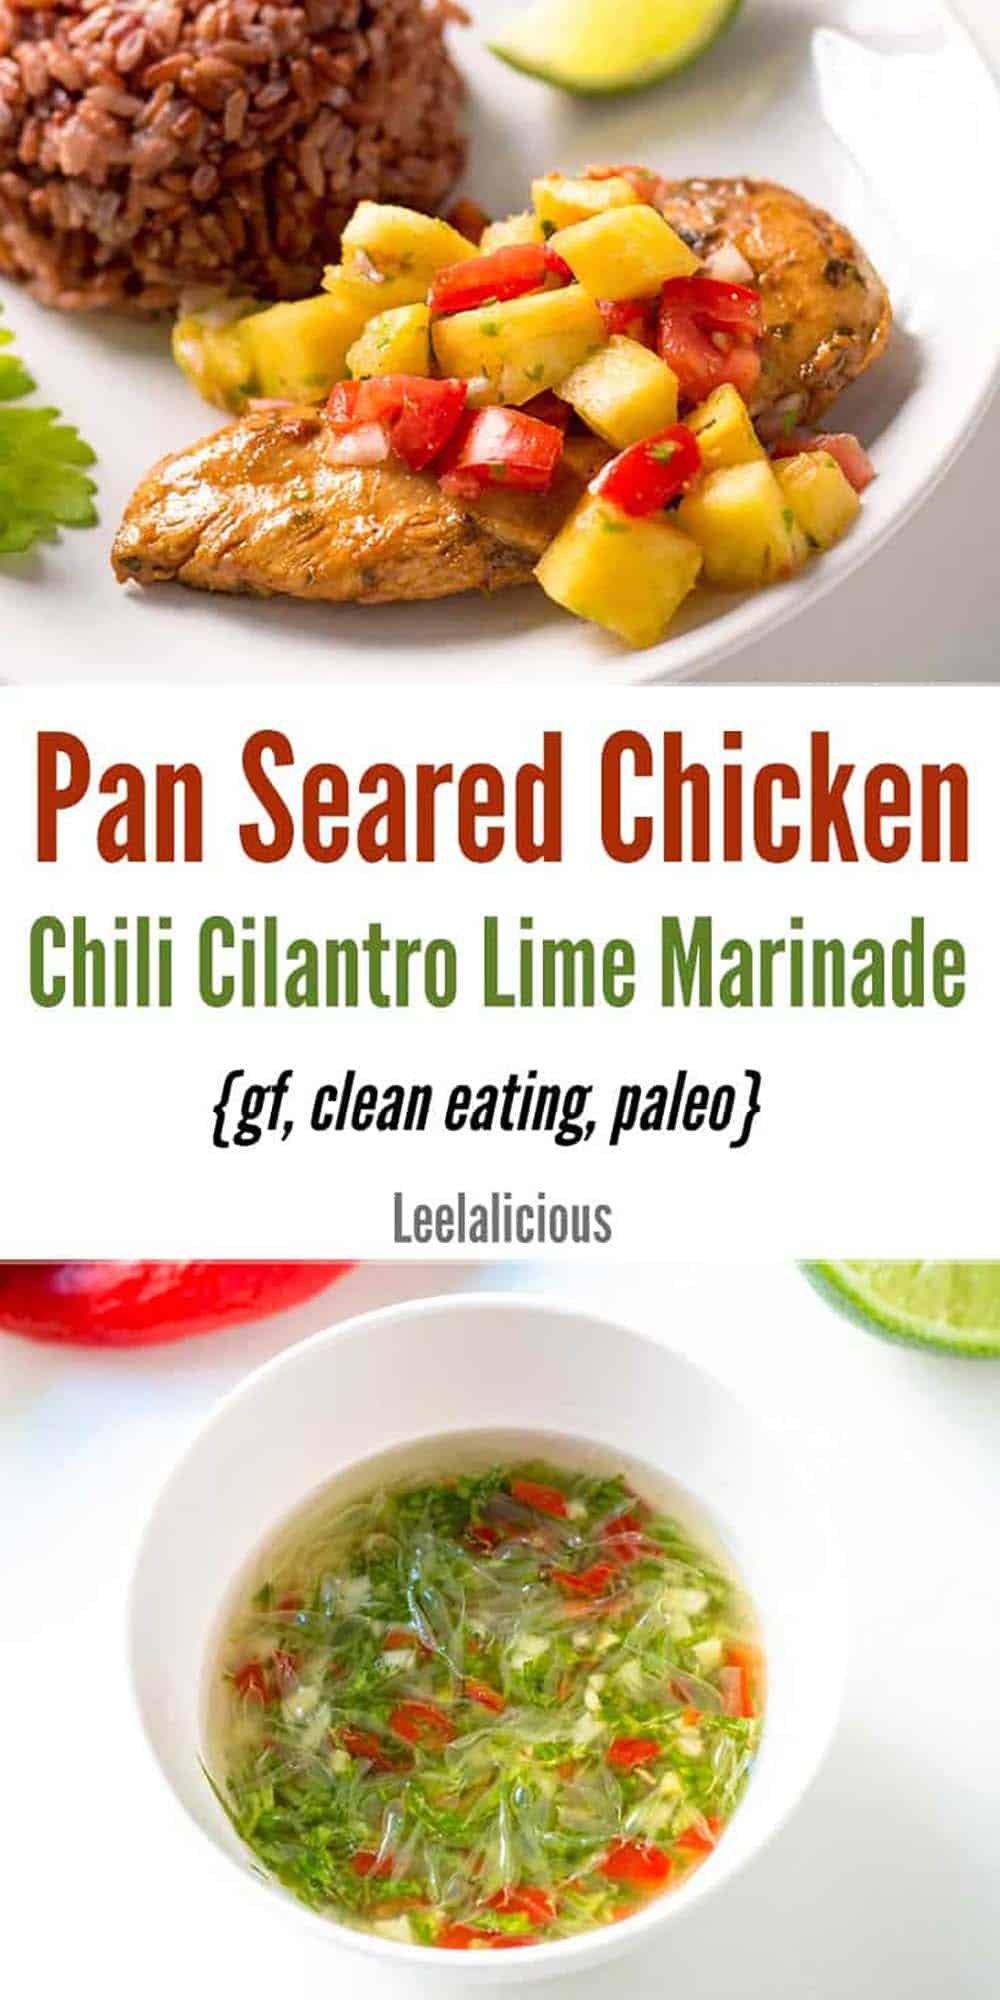 Pan-Seared Chicken in Chili Cilantro Lime Marinade